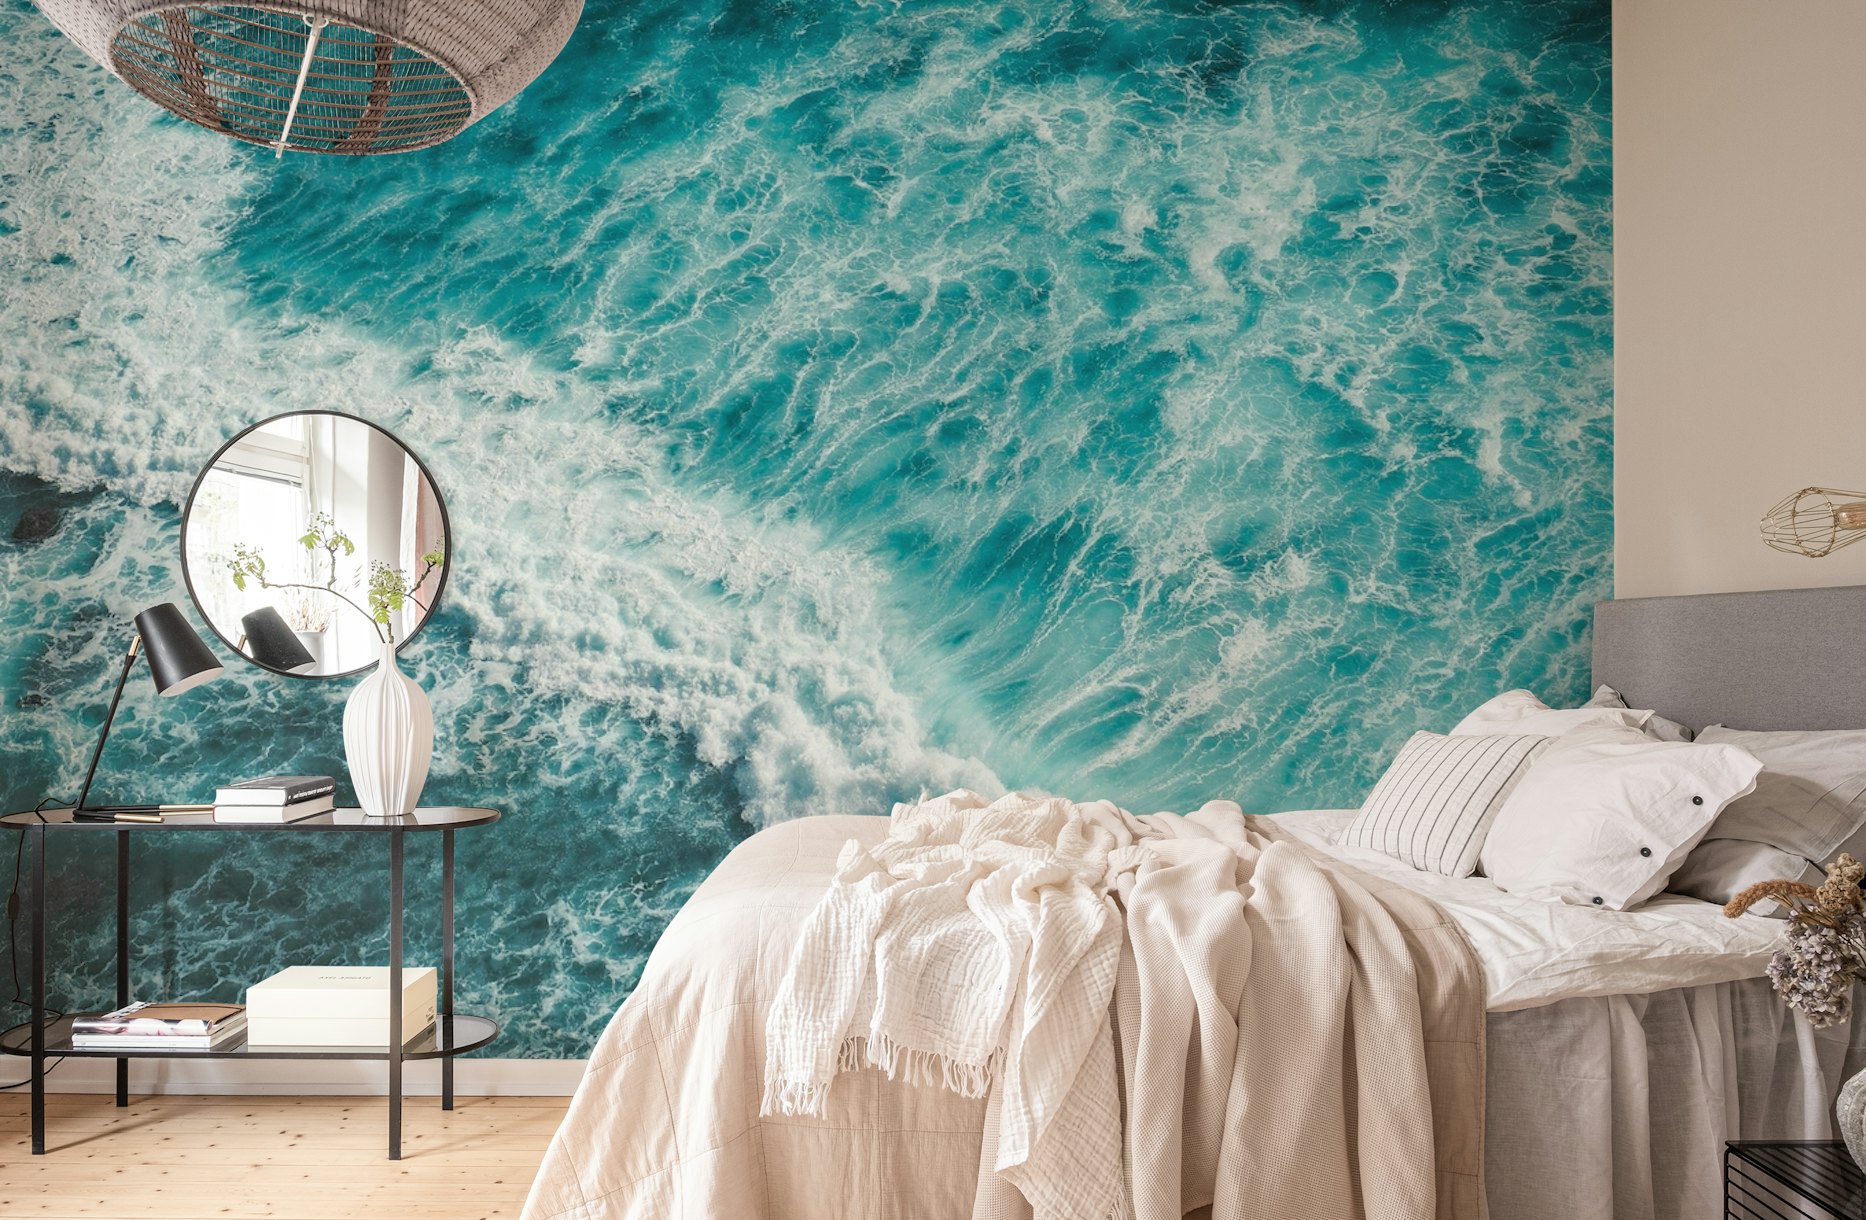 Wild Ocean wallpaper